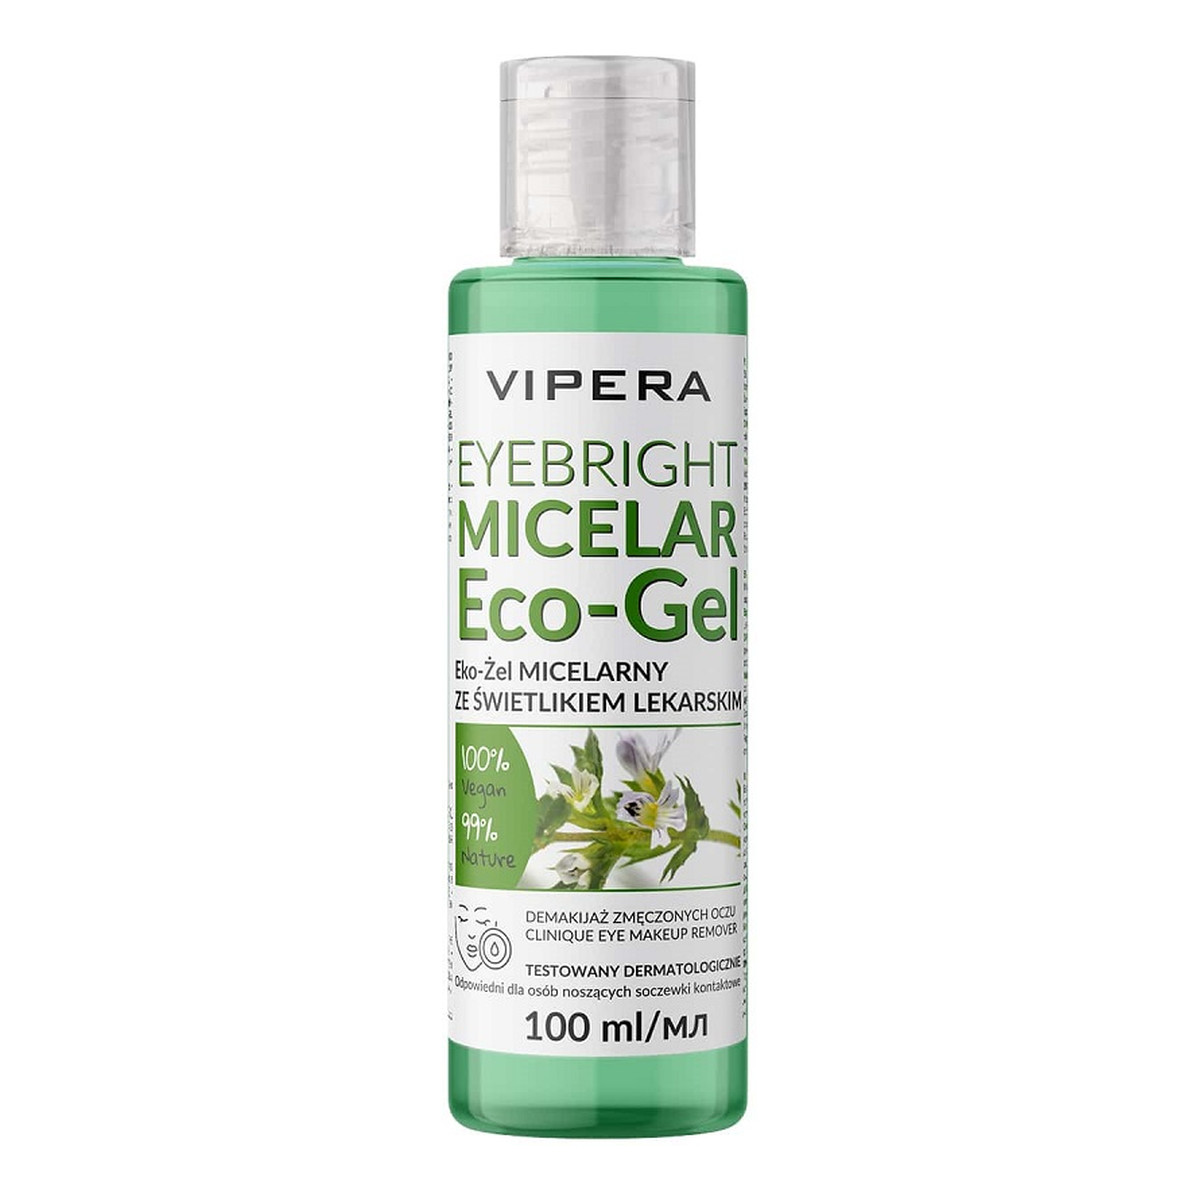 Vipera Eyebright micelar eco-gel eko-żel micelarny ze świetlikiem lekarskim do demakijażu zmęczonych oczu 100ml